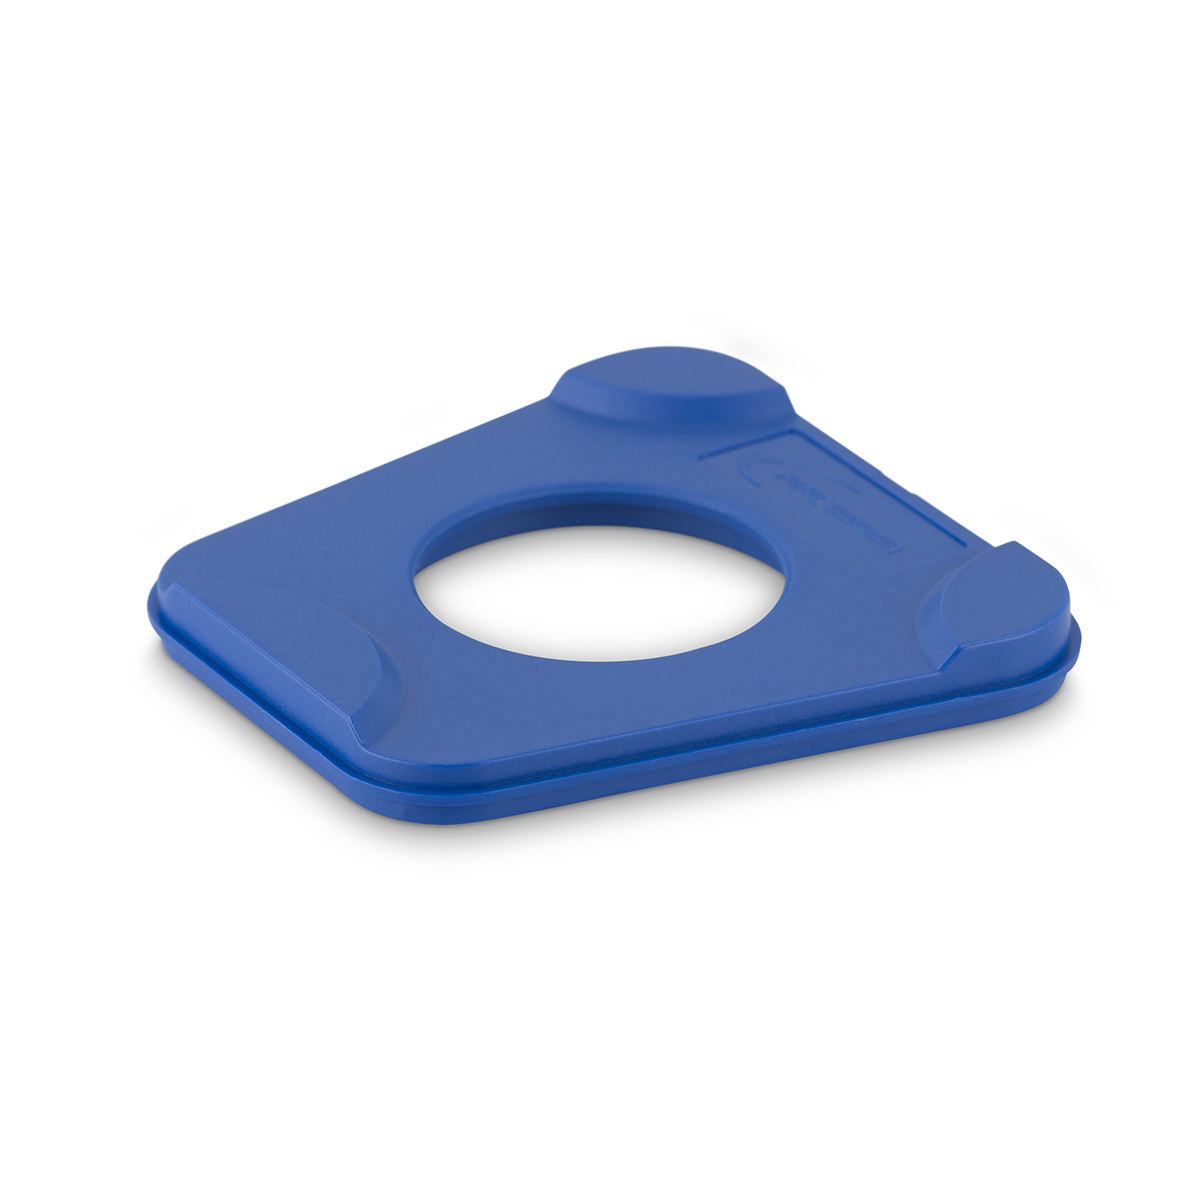  опорная Splitex Basic, цвет синий, упаковка 100шт: 14003 .